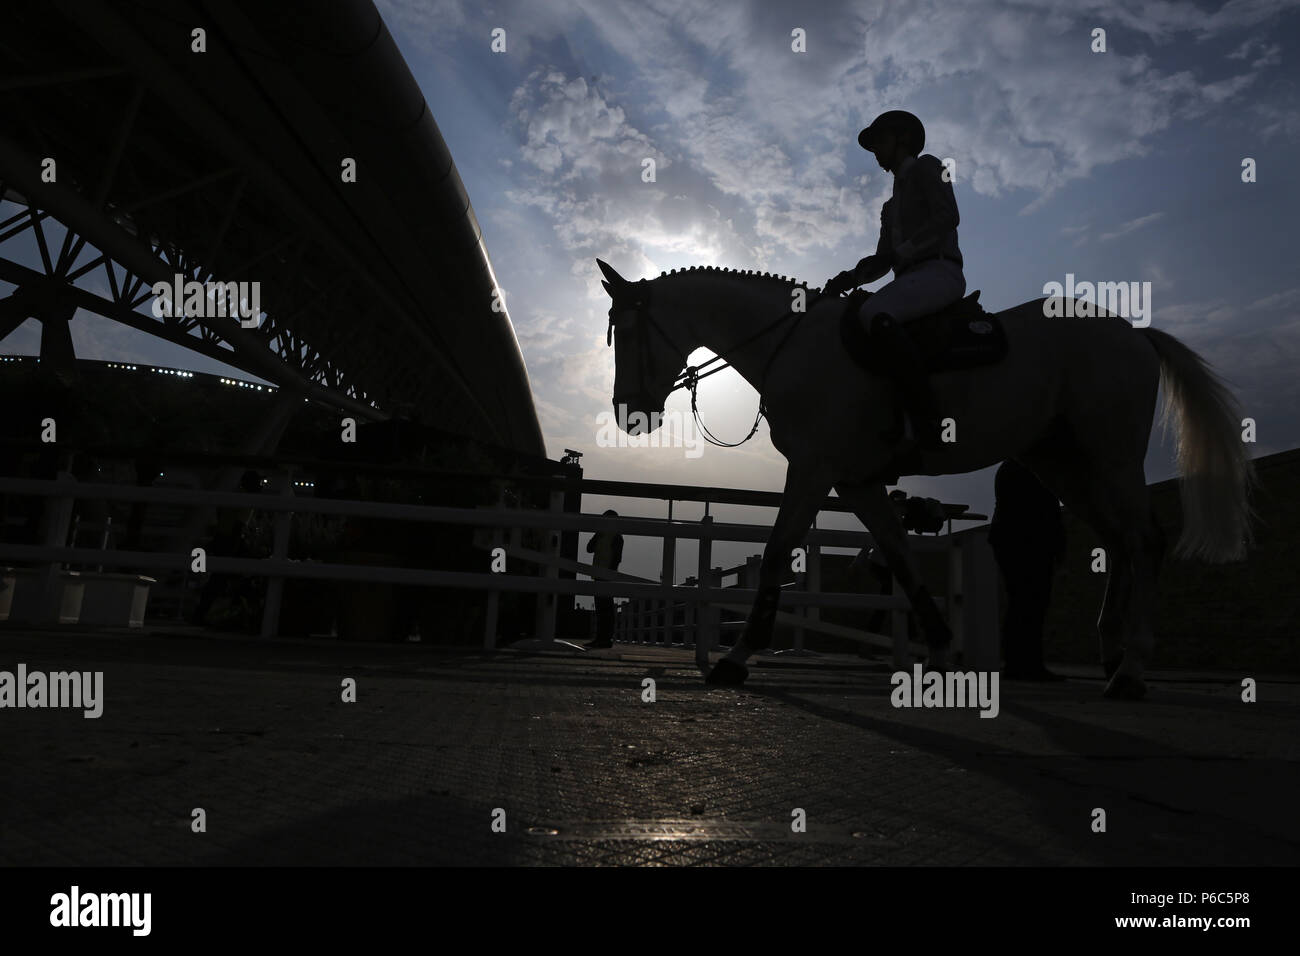 Doha, silhouette de cheval et cavalier à l'entrée de l'équitation Banque D'Images